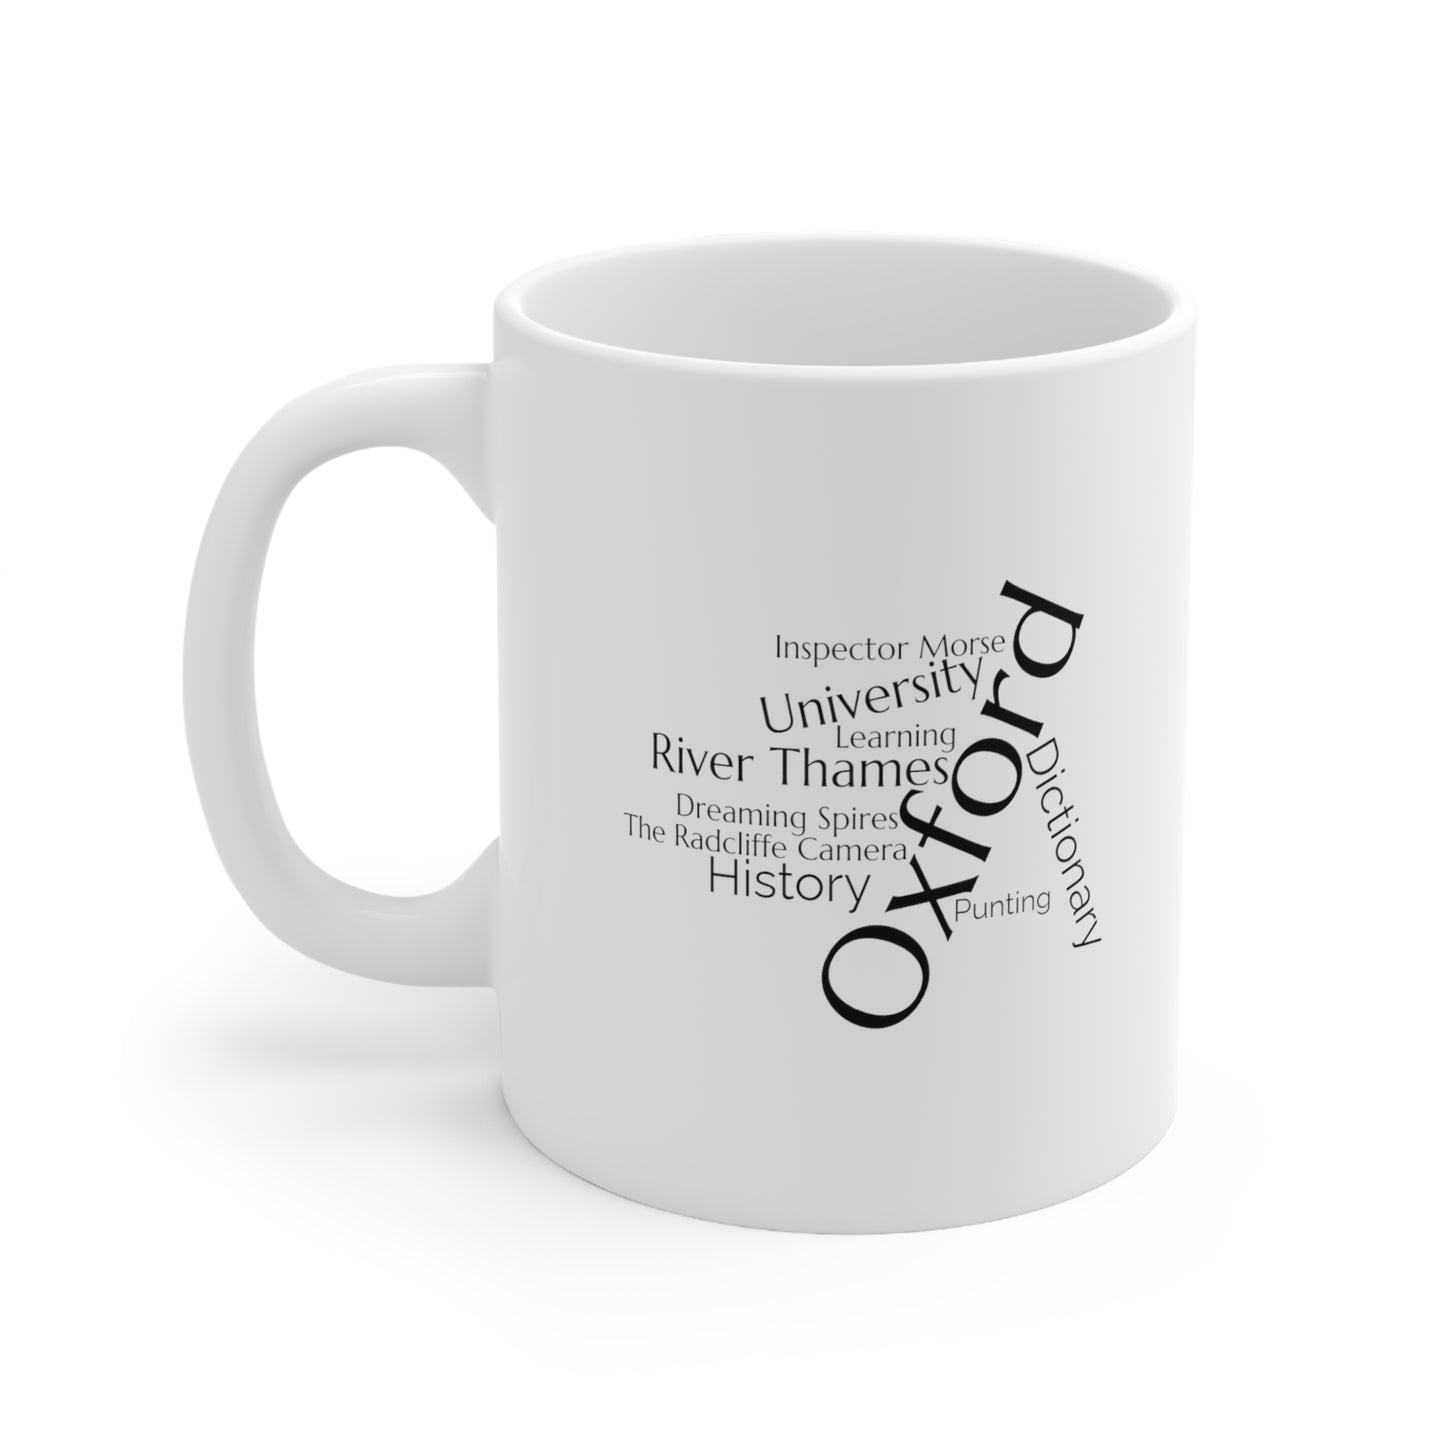 Oxford word mug, local mug, geography mug, gift, mug, coffee cup, word mug, wordcloud mug, christmas gift, birthday gift